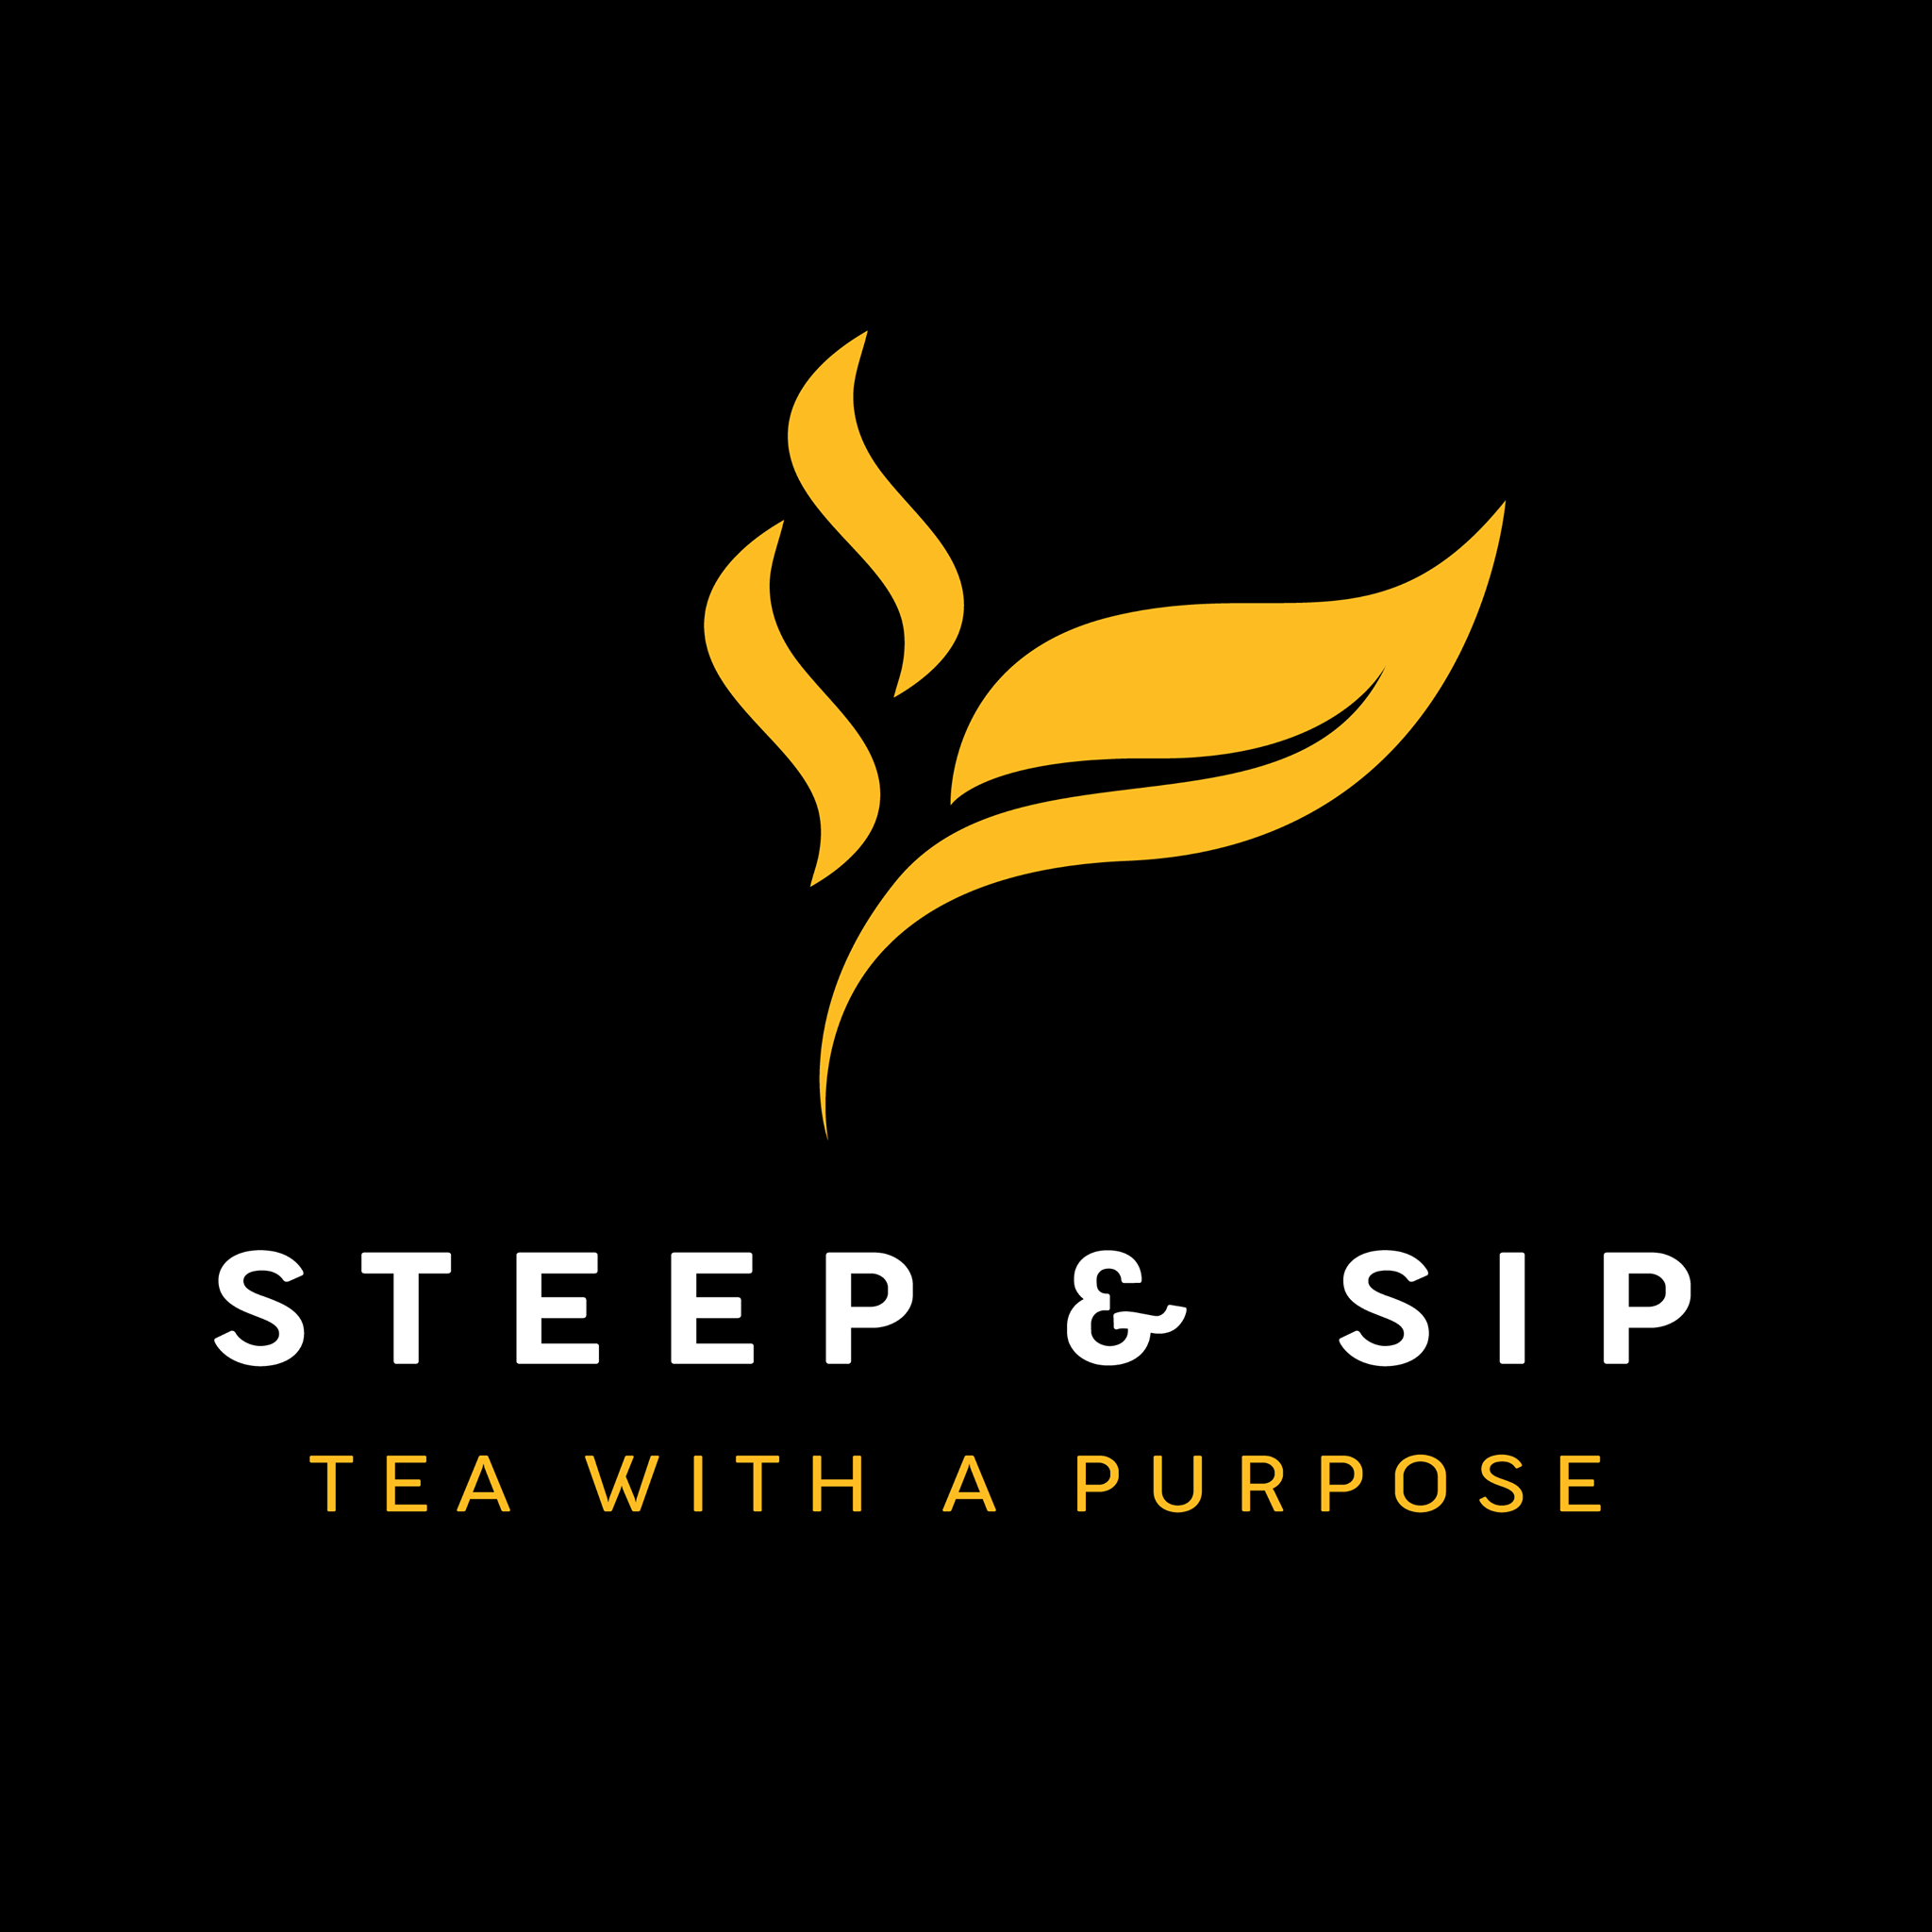 Steep and Sip Loose Leaf Teas